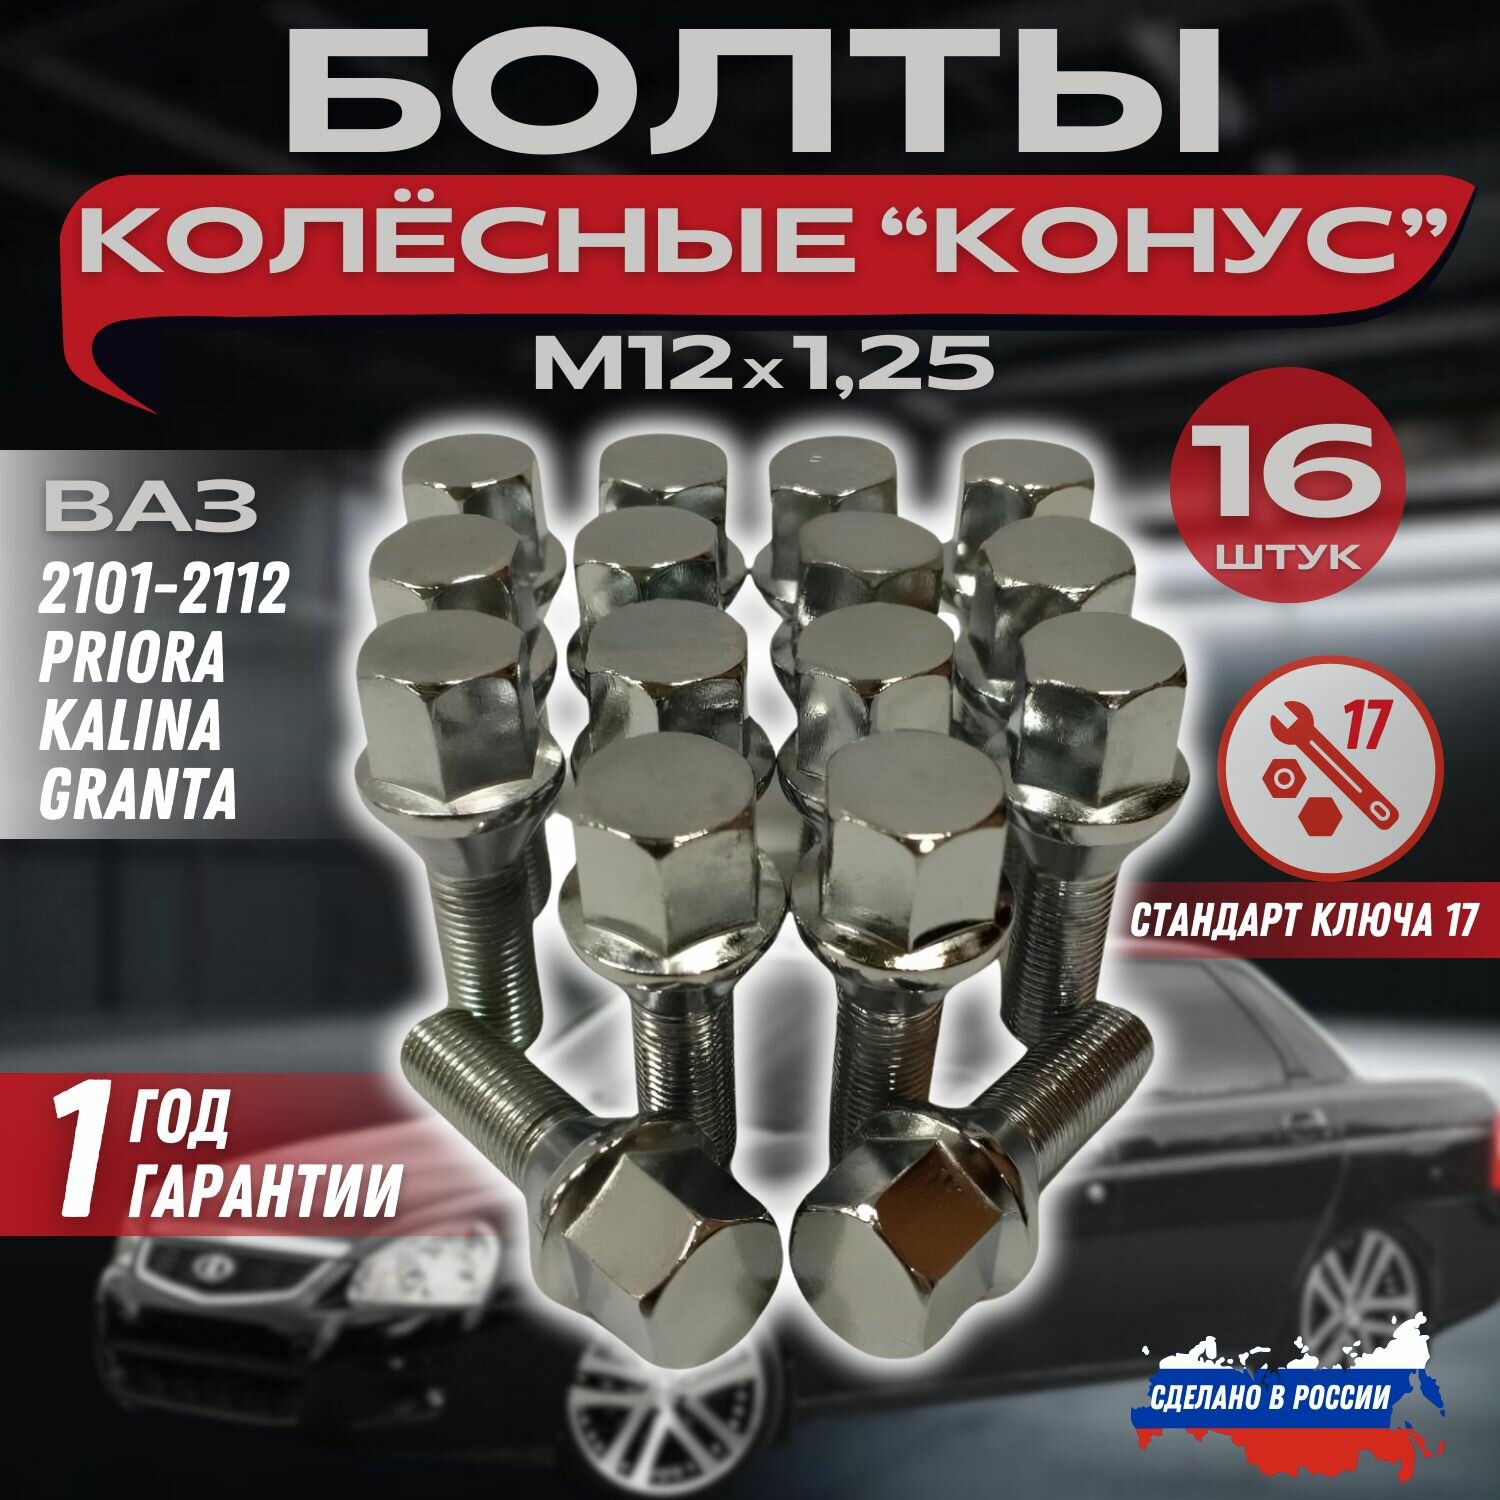 Болты колесные автомобильные М12х1,25;17 ключ; Хром; ВАЗ 2101-2107,2108-21099,2110-2112, Priora, Kalina, Granta.